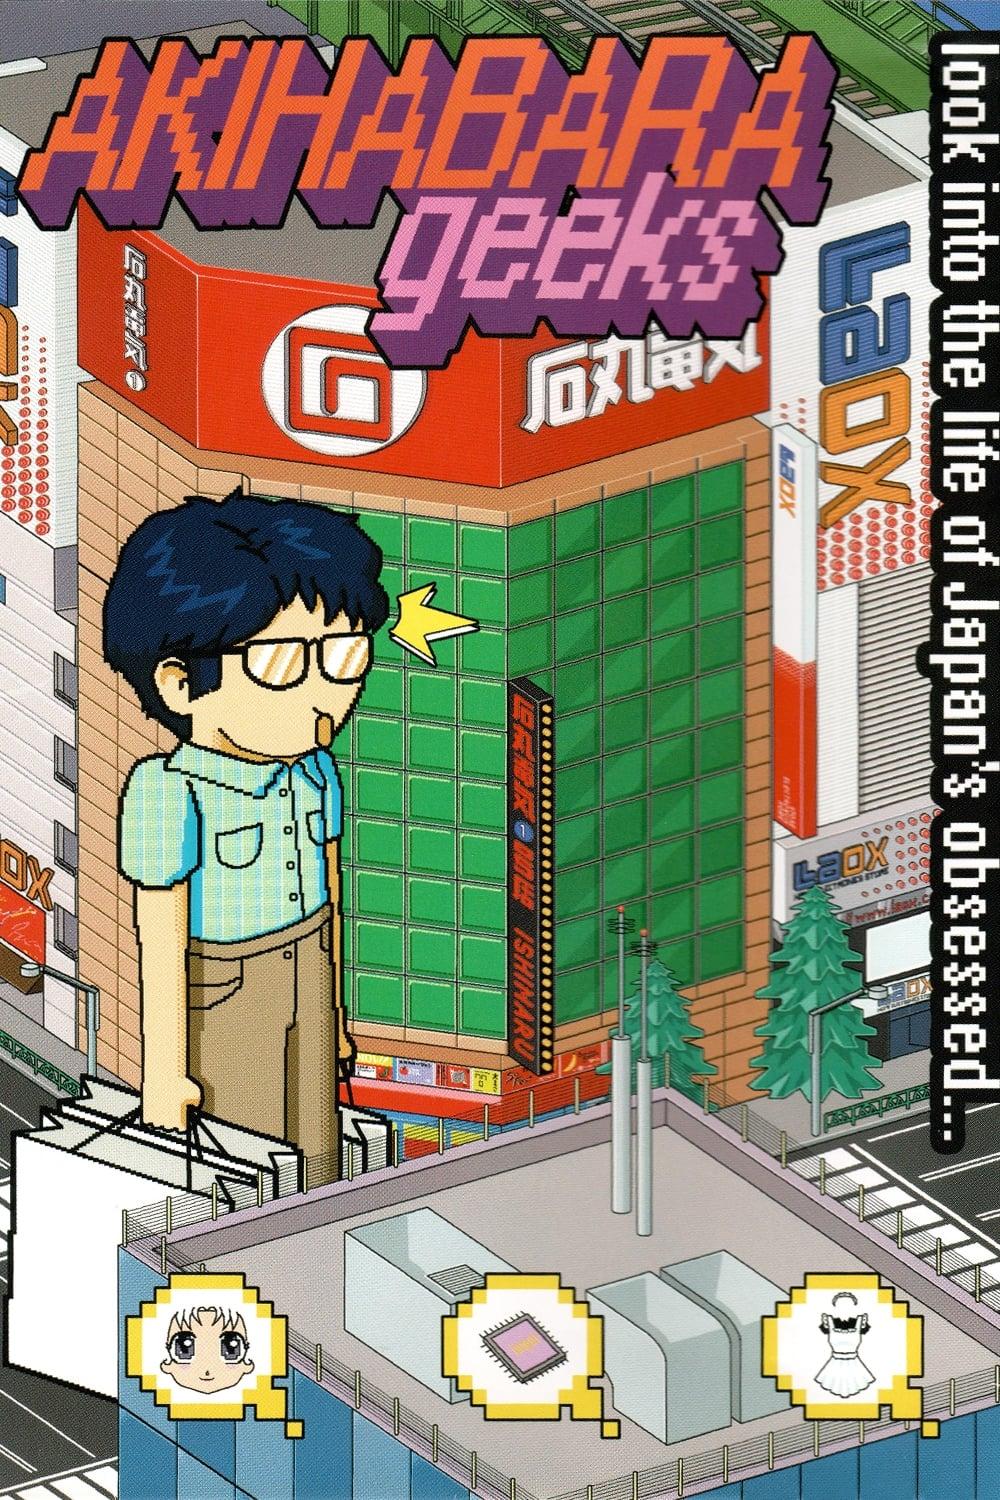 Akihabara Geeks poster